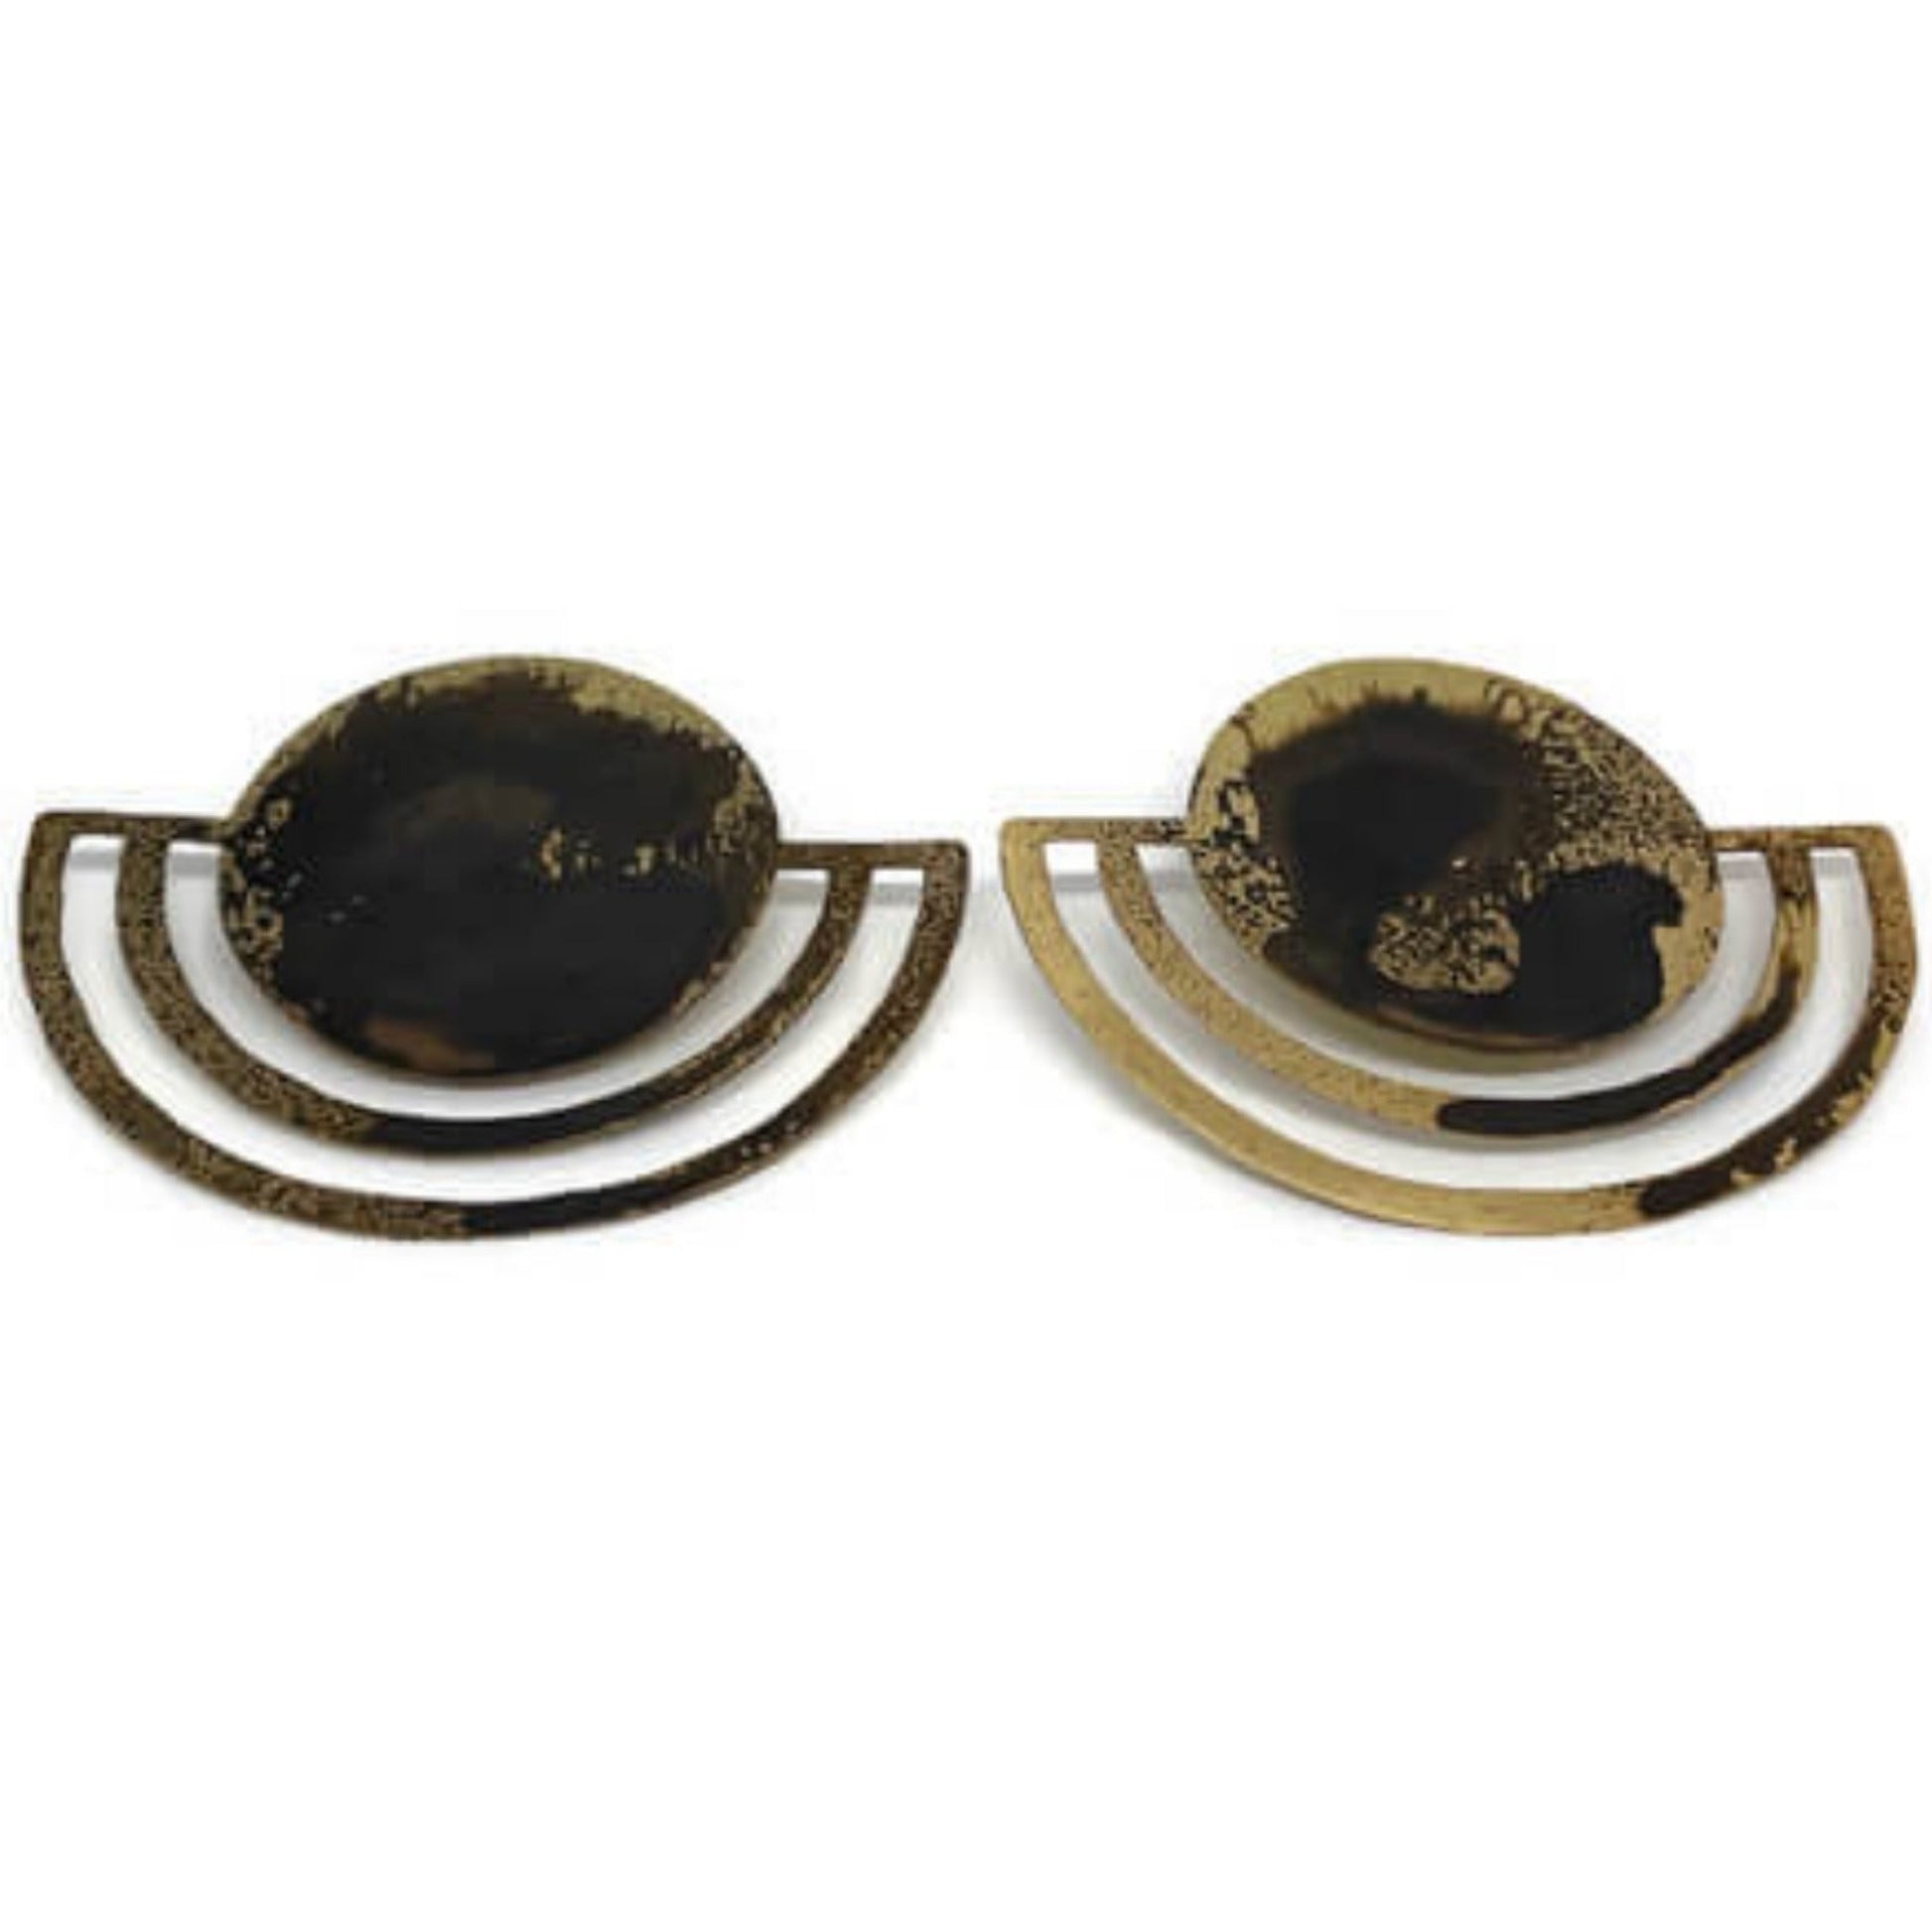 Oxidised brass Earrings | Yellow - Black Internal Ideas Earrings - CURIUDO